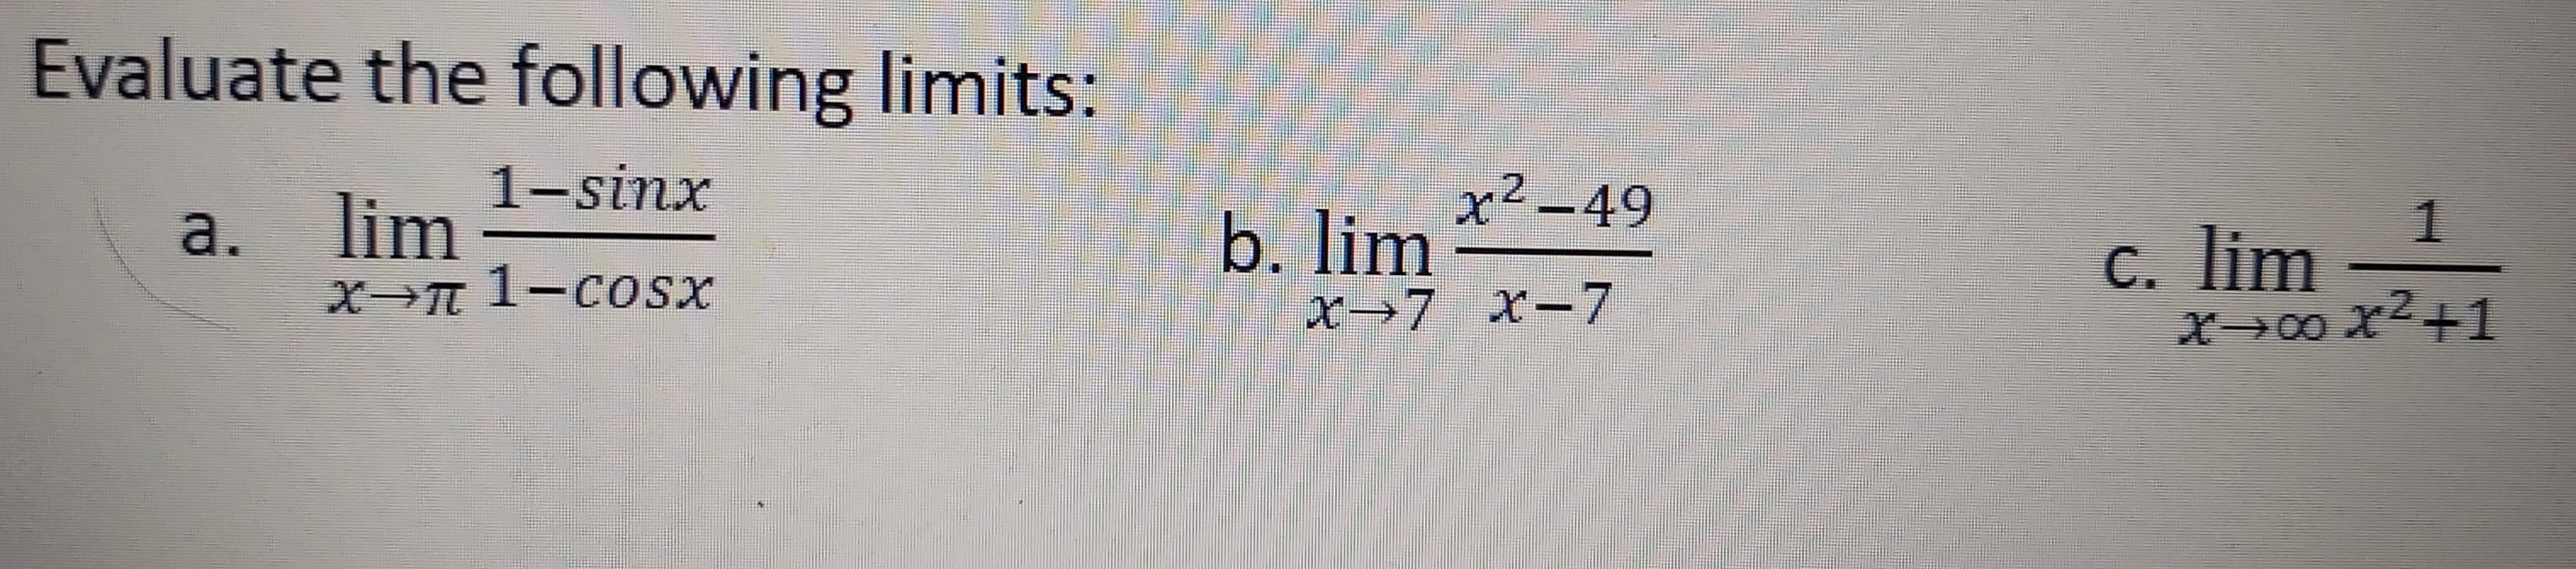 1-sinx
x²-49
b. lim
x→7 x-7
lim
C. lim
X→00 x²+1
a.
X 1-cosx
